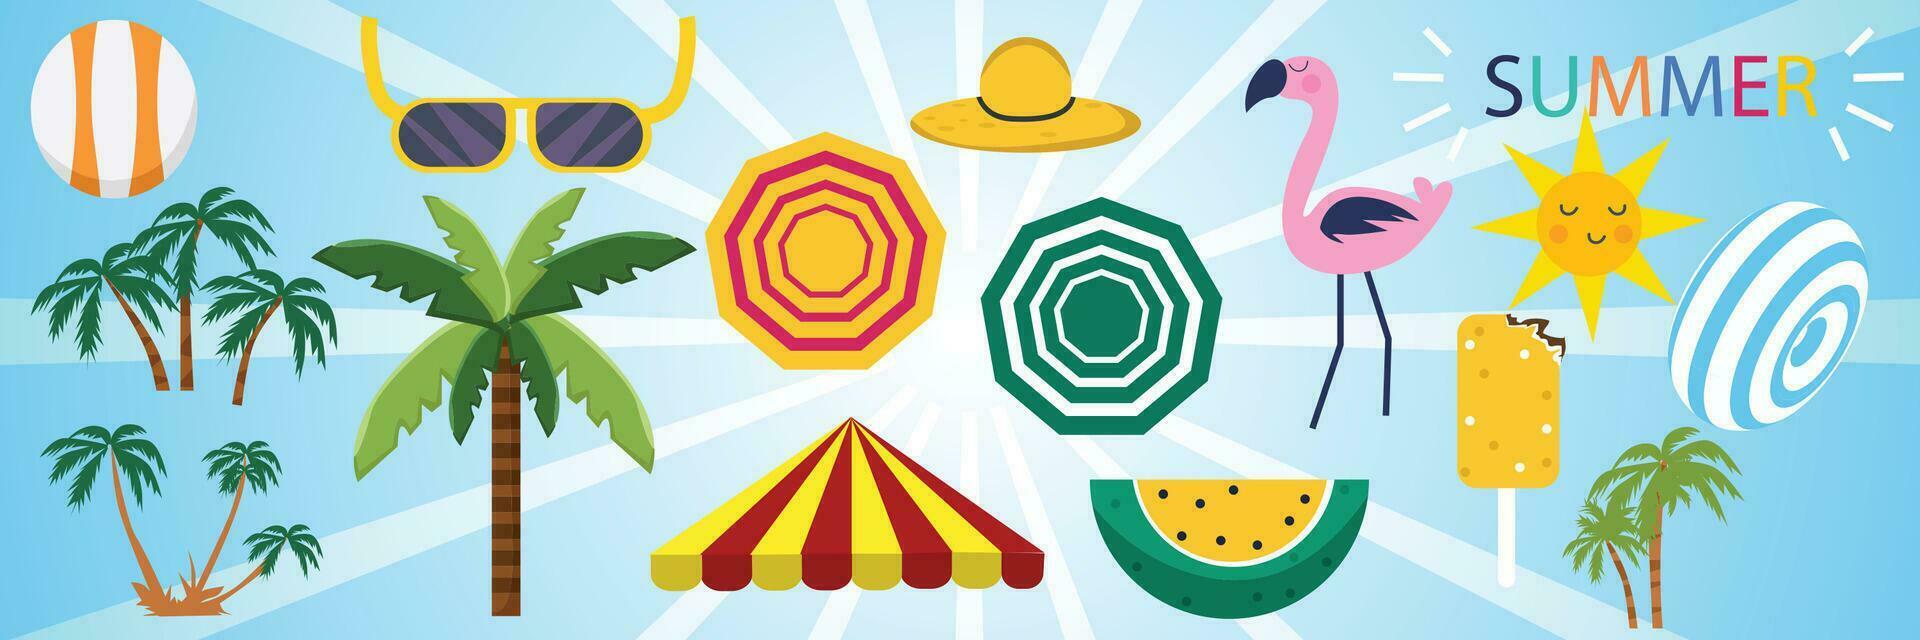 conjunto de linda verano íconos alimento, beber, palma hoja, frutas y flamenco. soleado verano póster vector